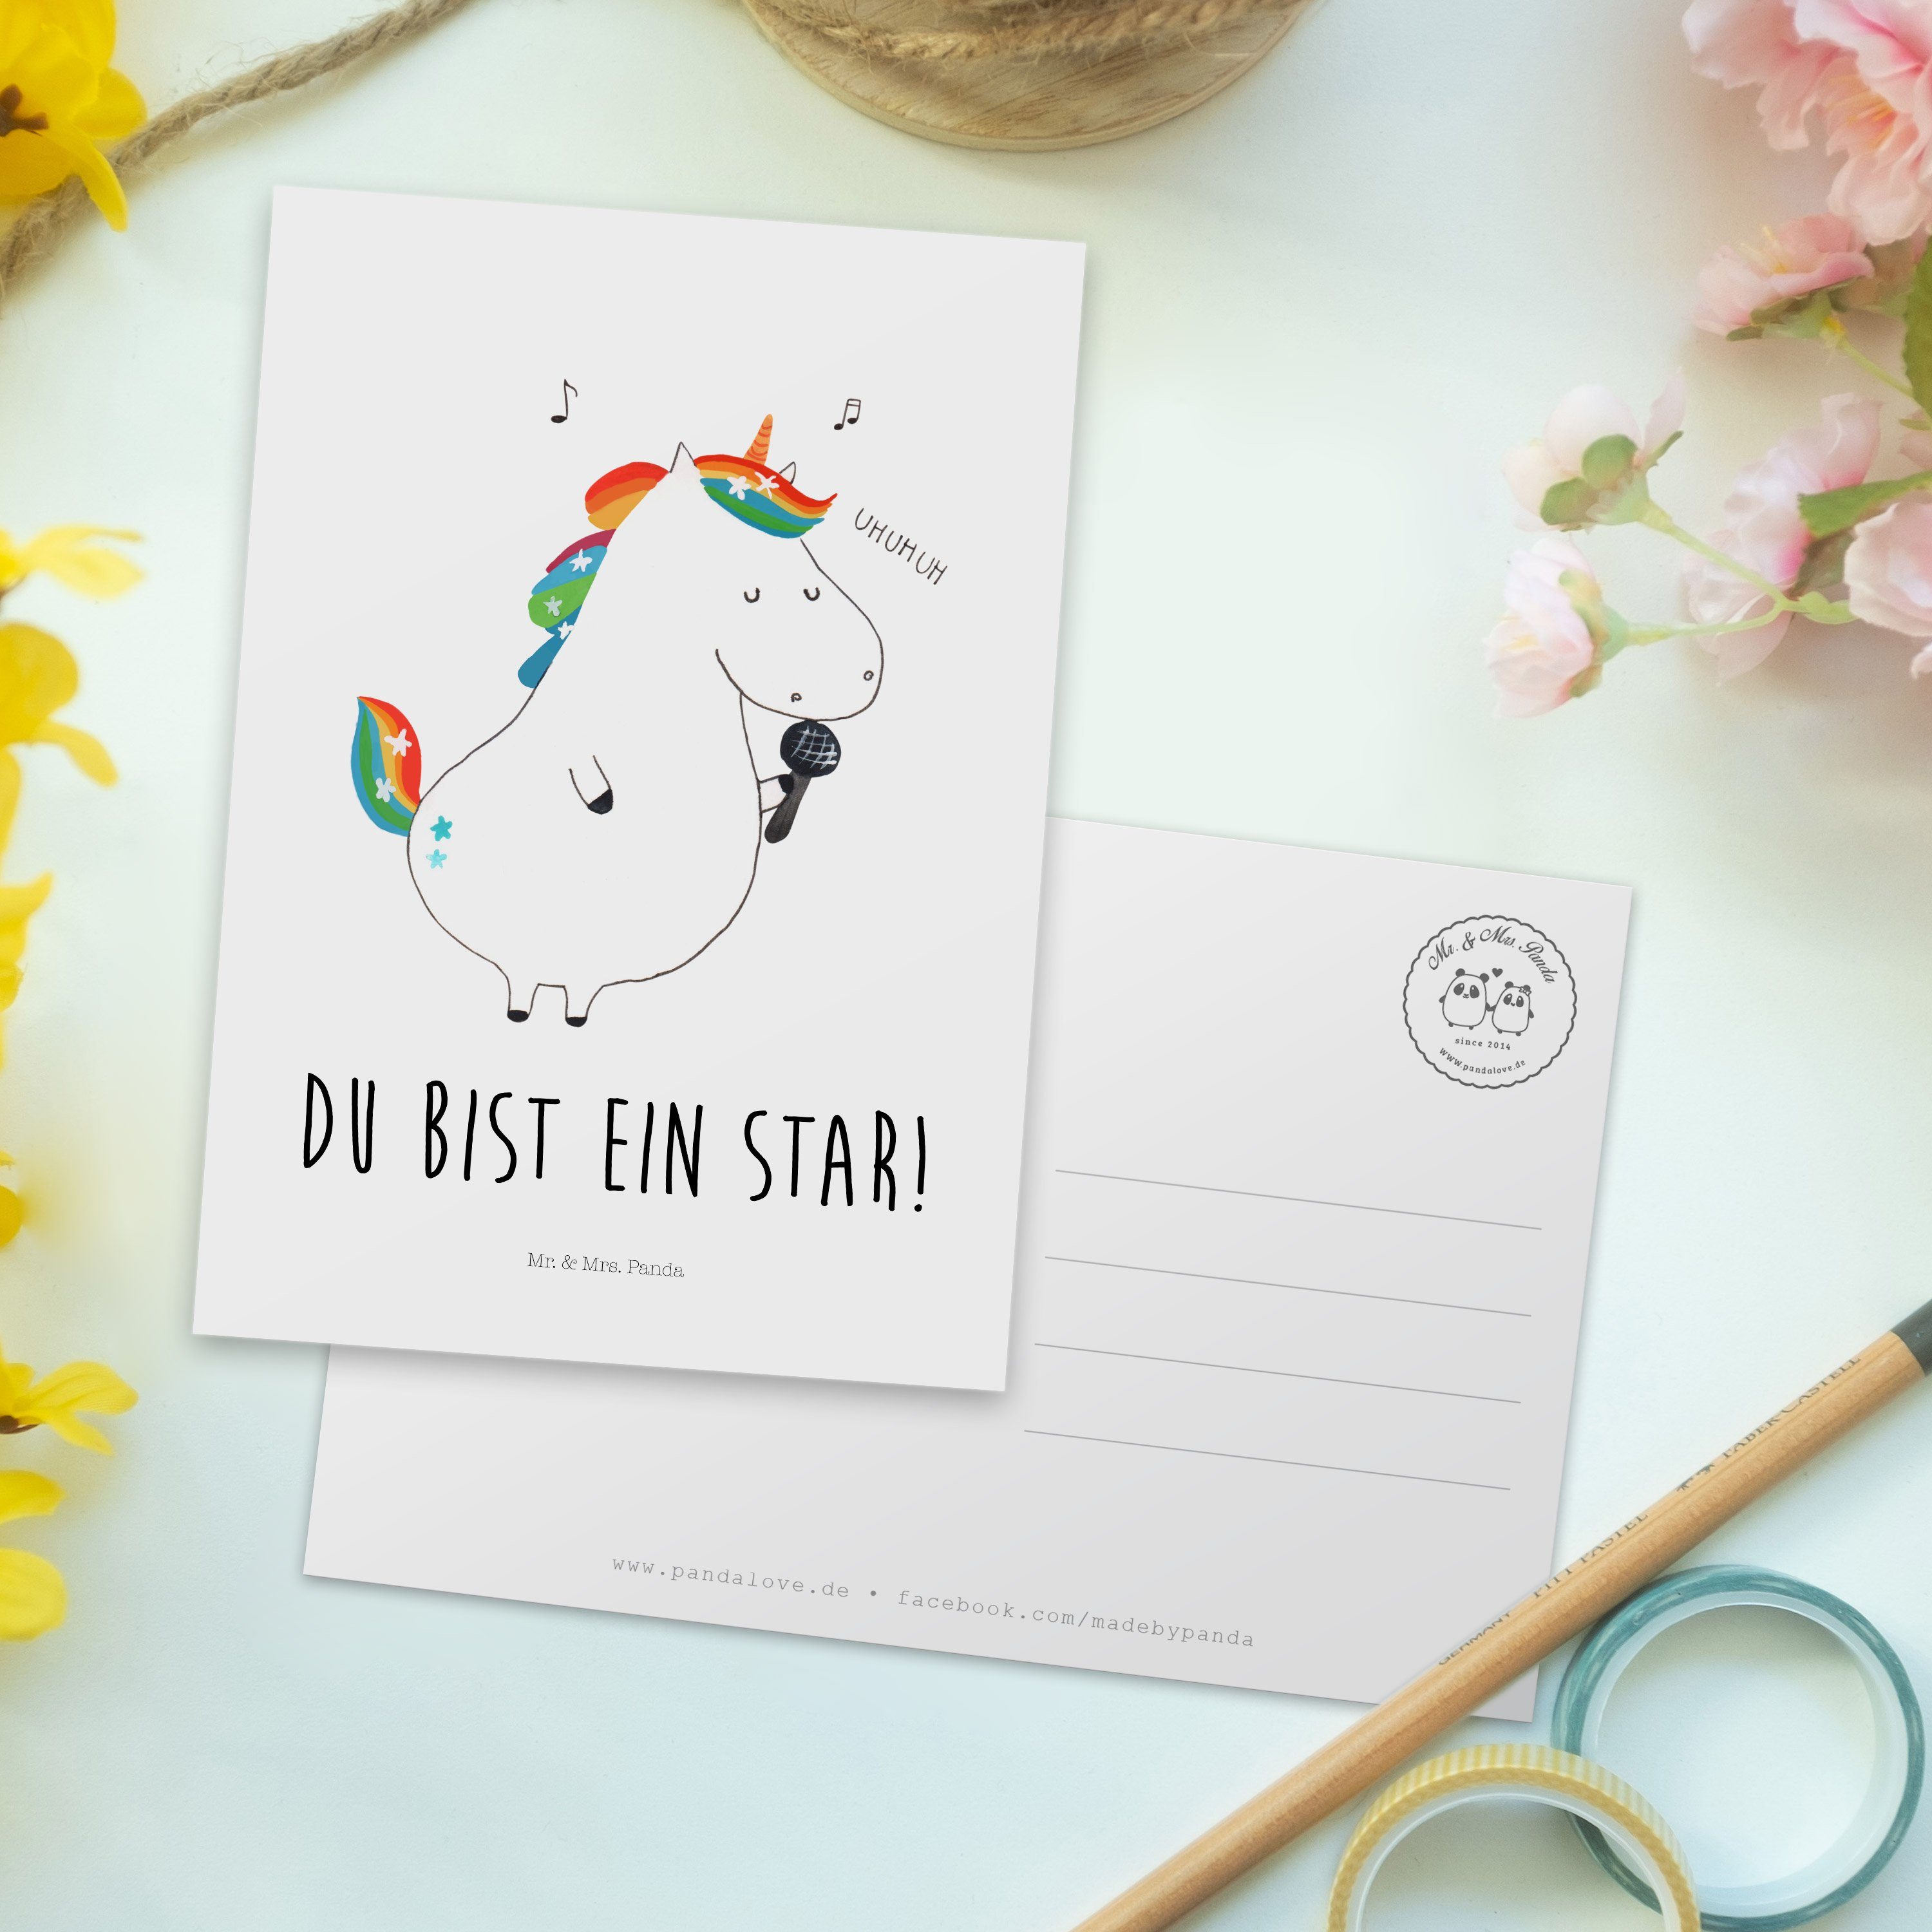 Mr. & Mrs. Dankeskarte, Pegasus, Geschenk, Postkarte Gr Sänger Einhörner, Weiß Einhorn Panda - 